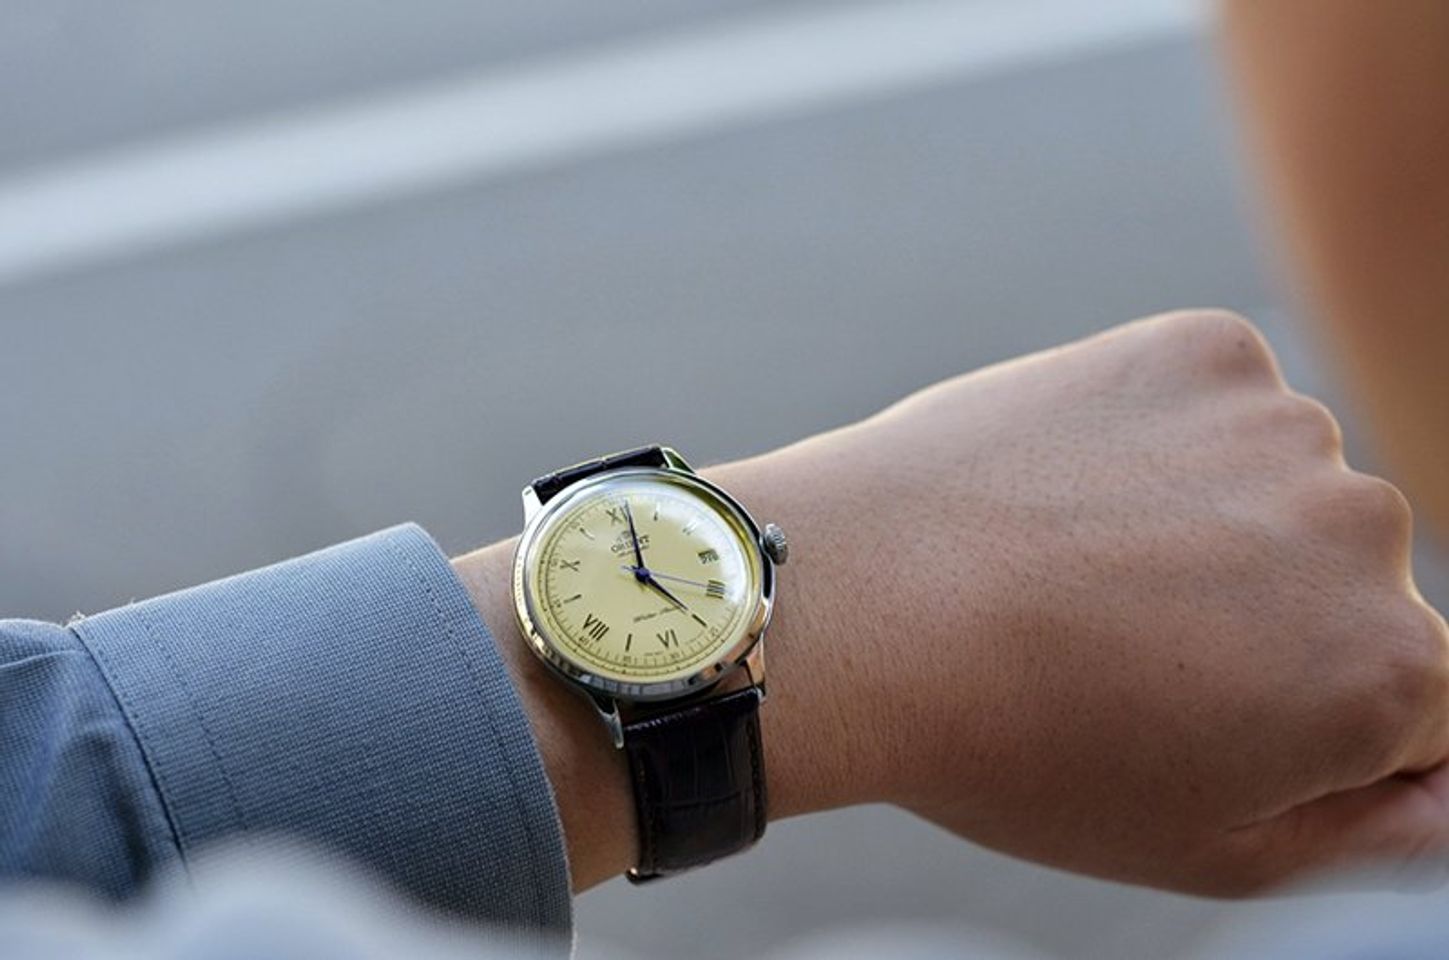 Nam tính, mạnh mẽ và đầy lịch lãm là lời khen dành cho chiếc đồng hồ Orient Automatic này